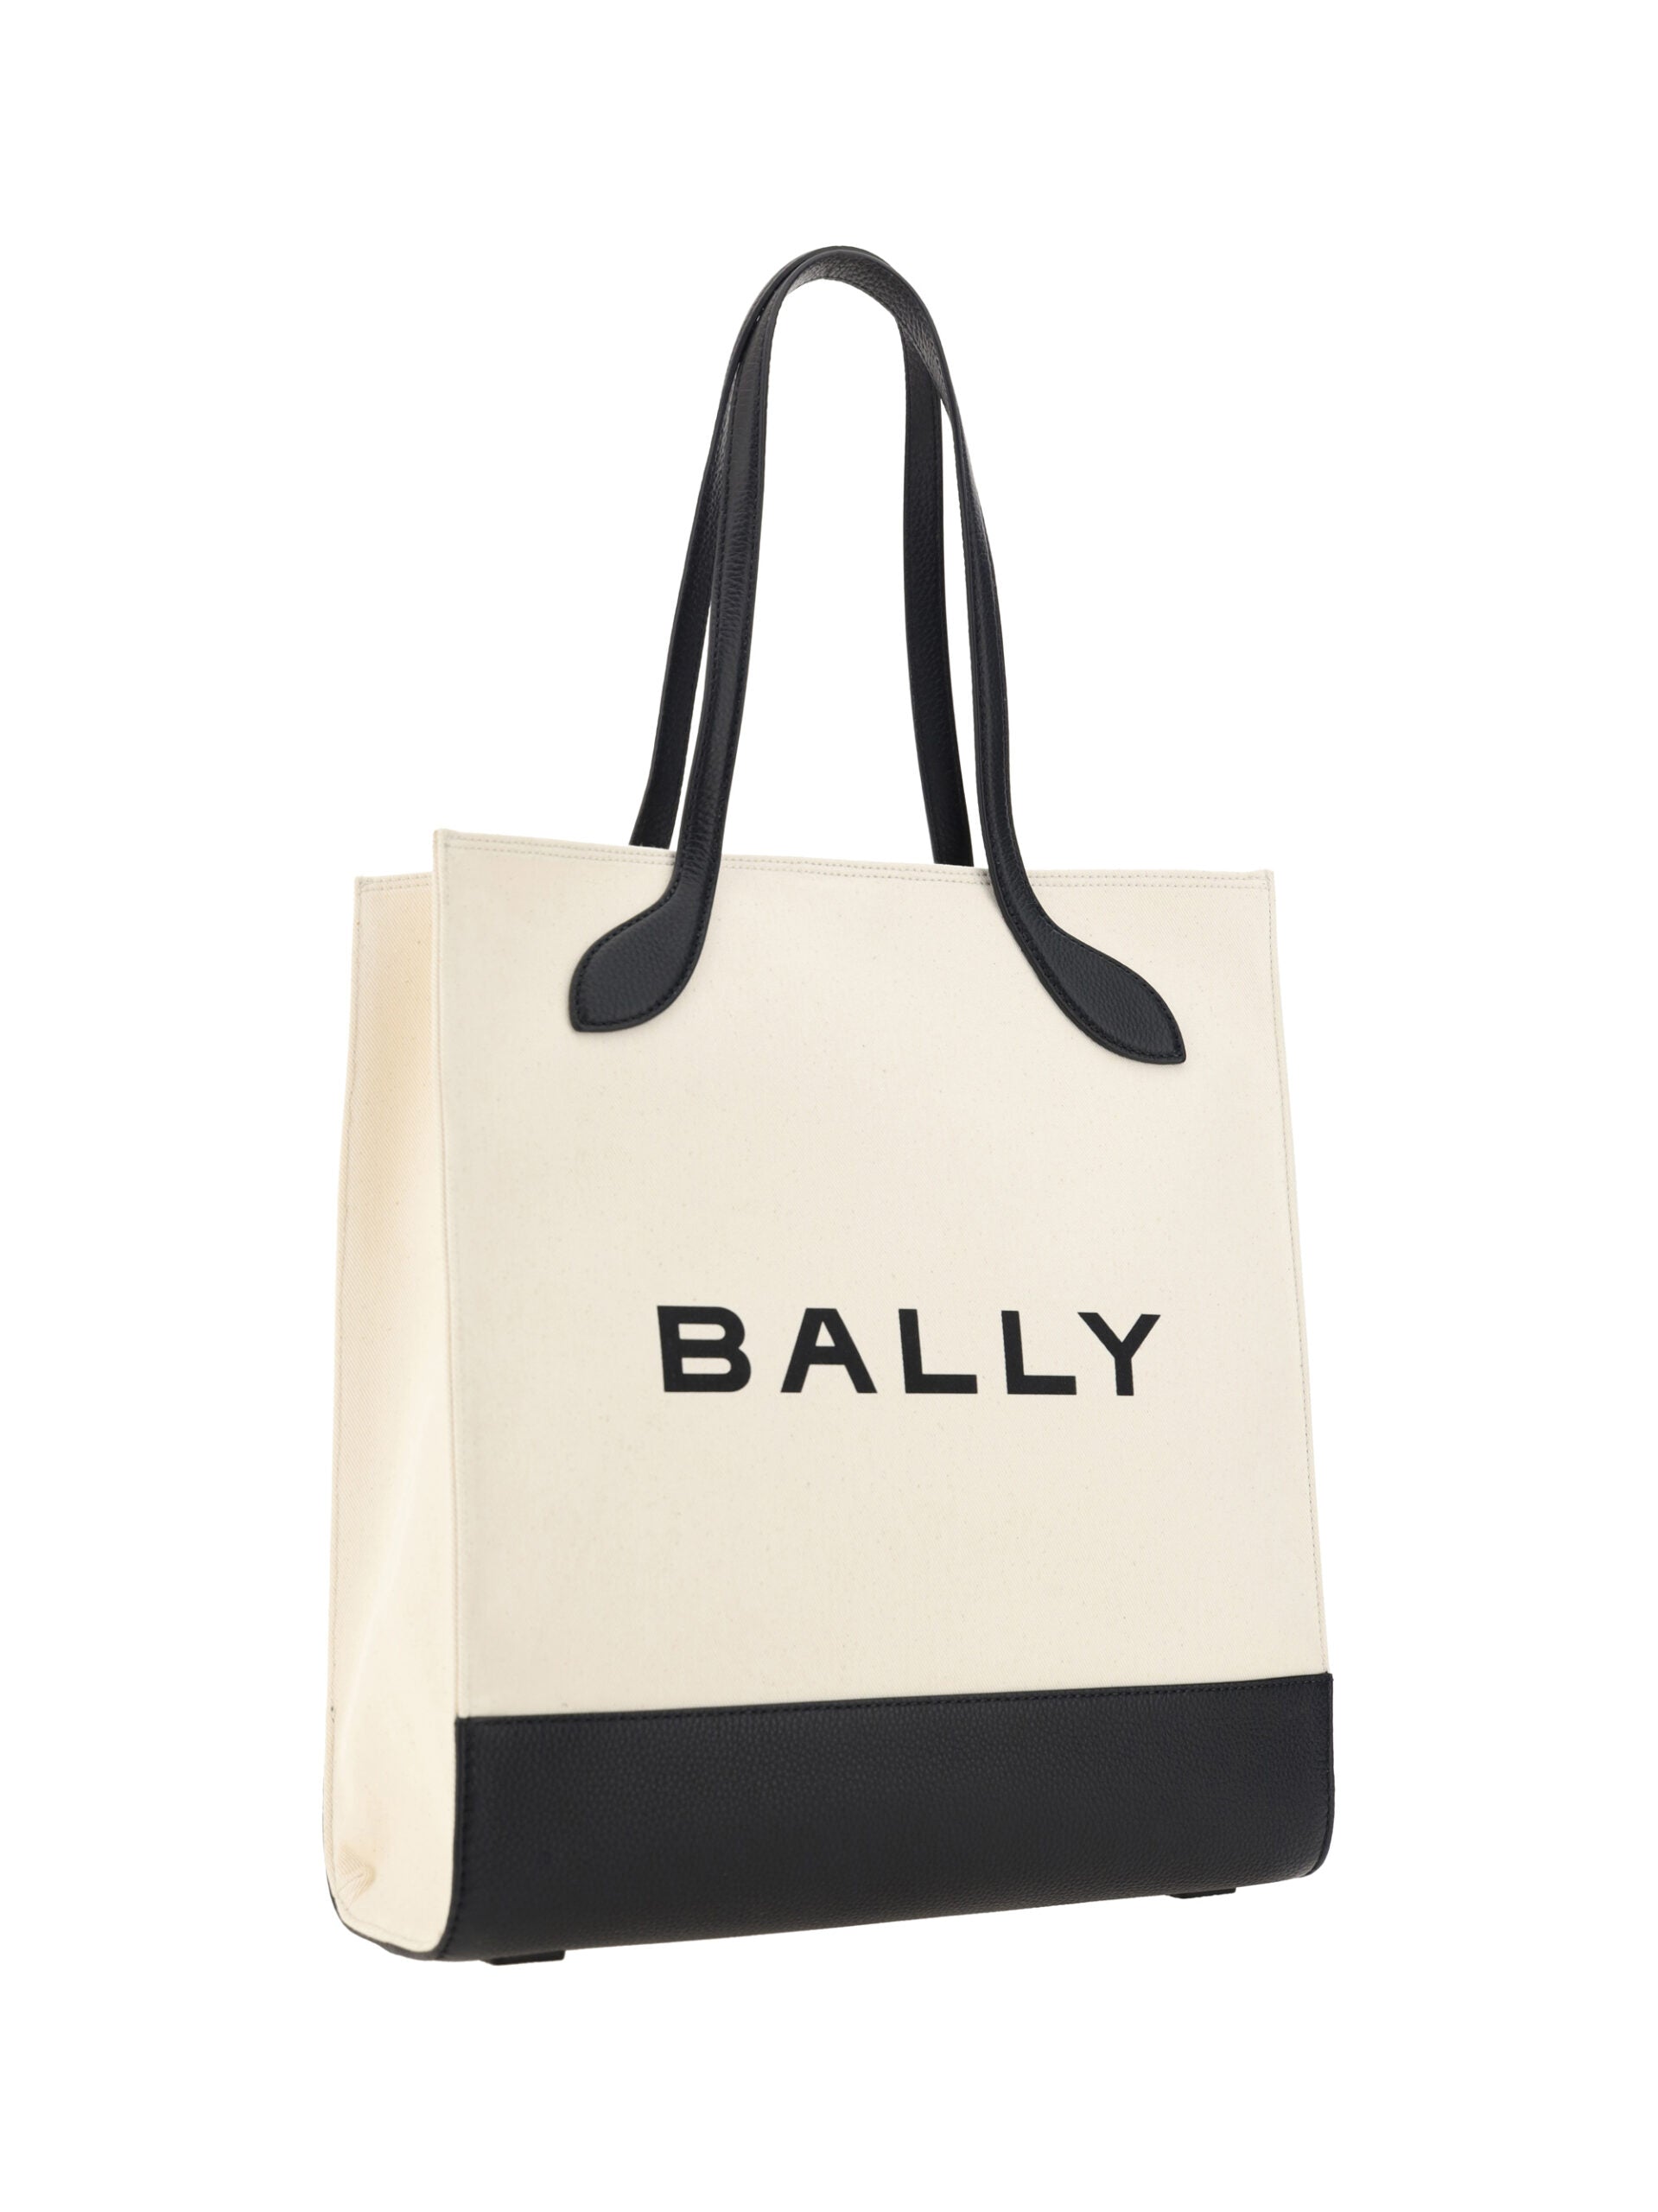 Bally Chic – Monochrome Tragetasche aus Leder